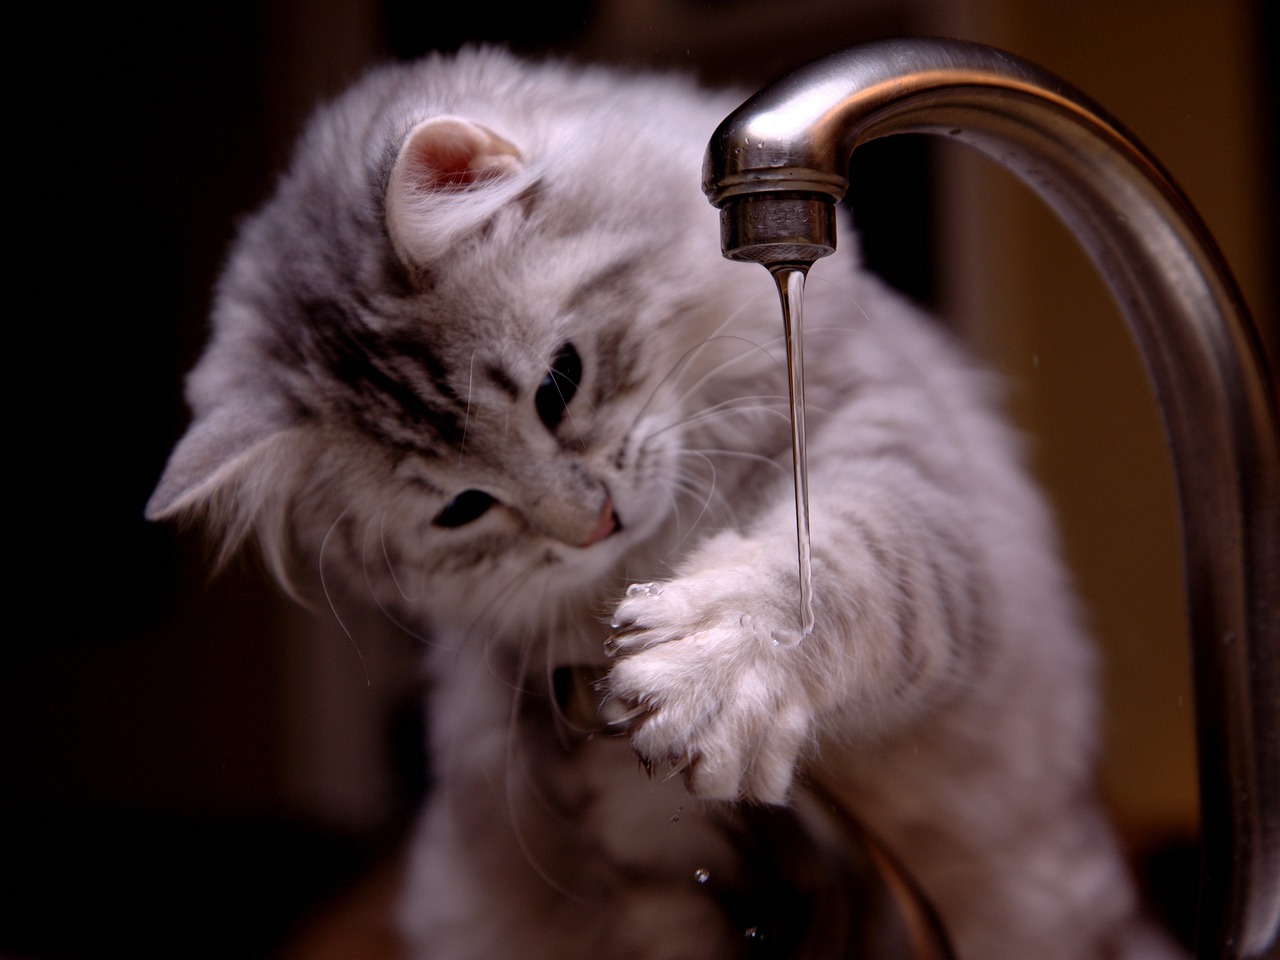 Peut-on avoir confiance dans l’eau du robinet ?